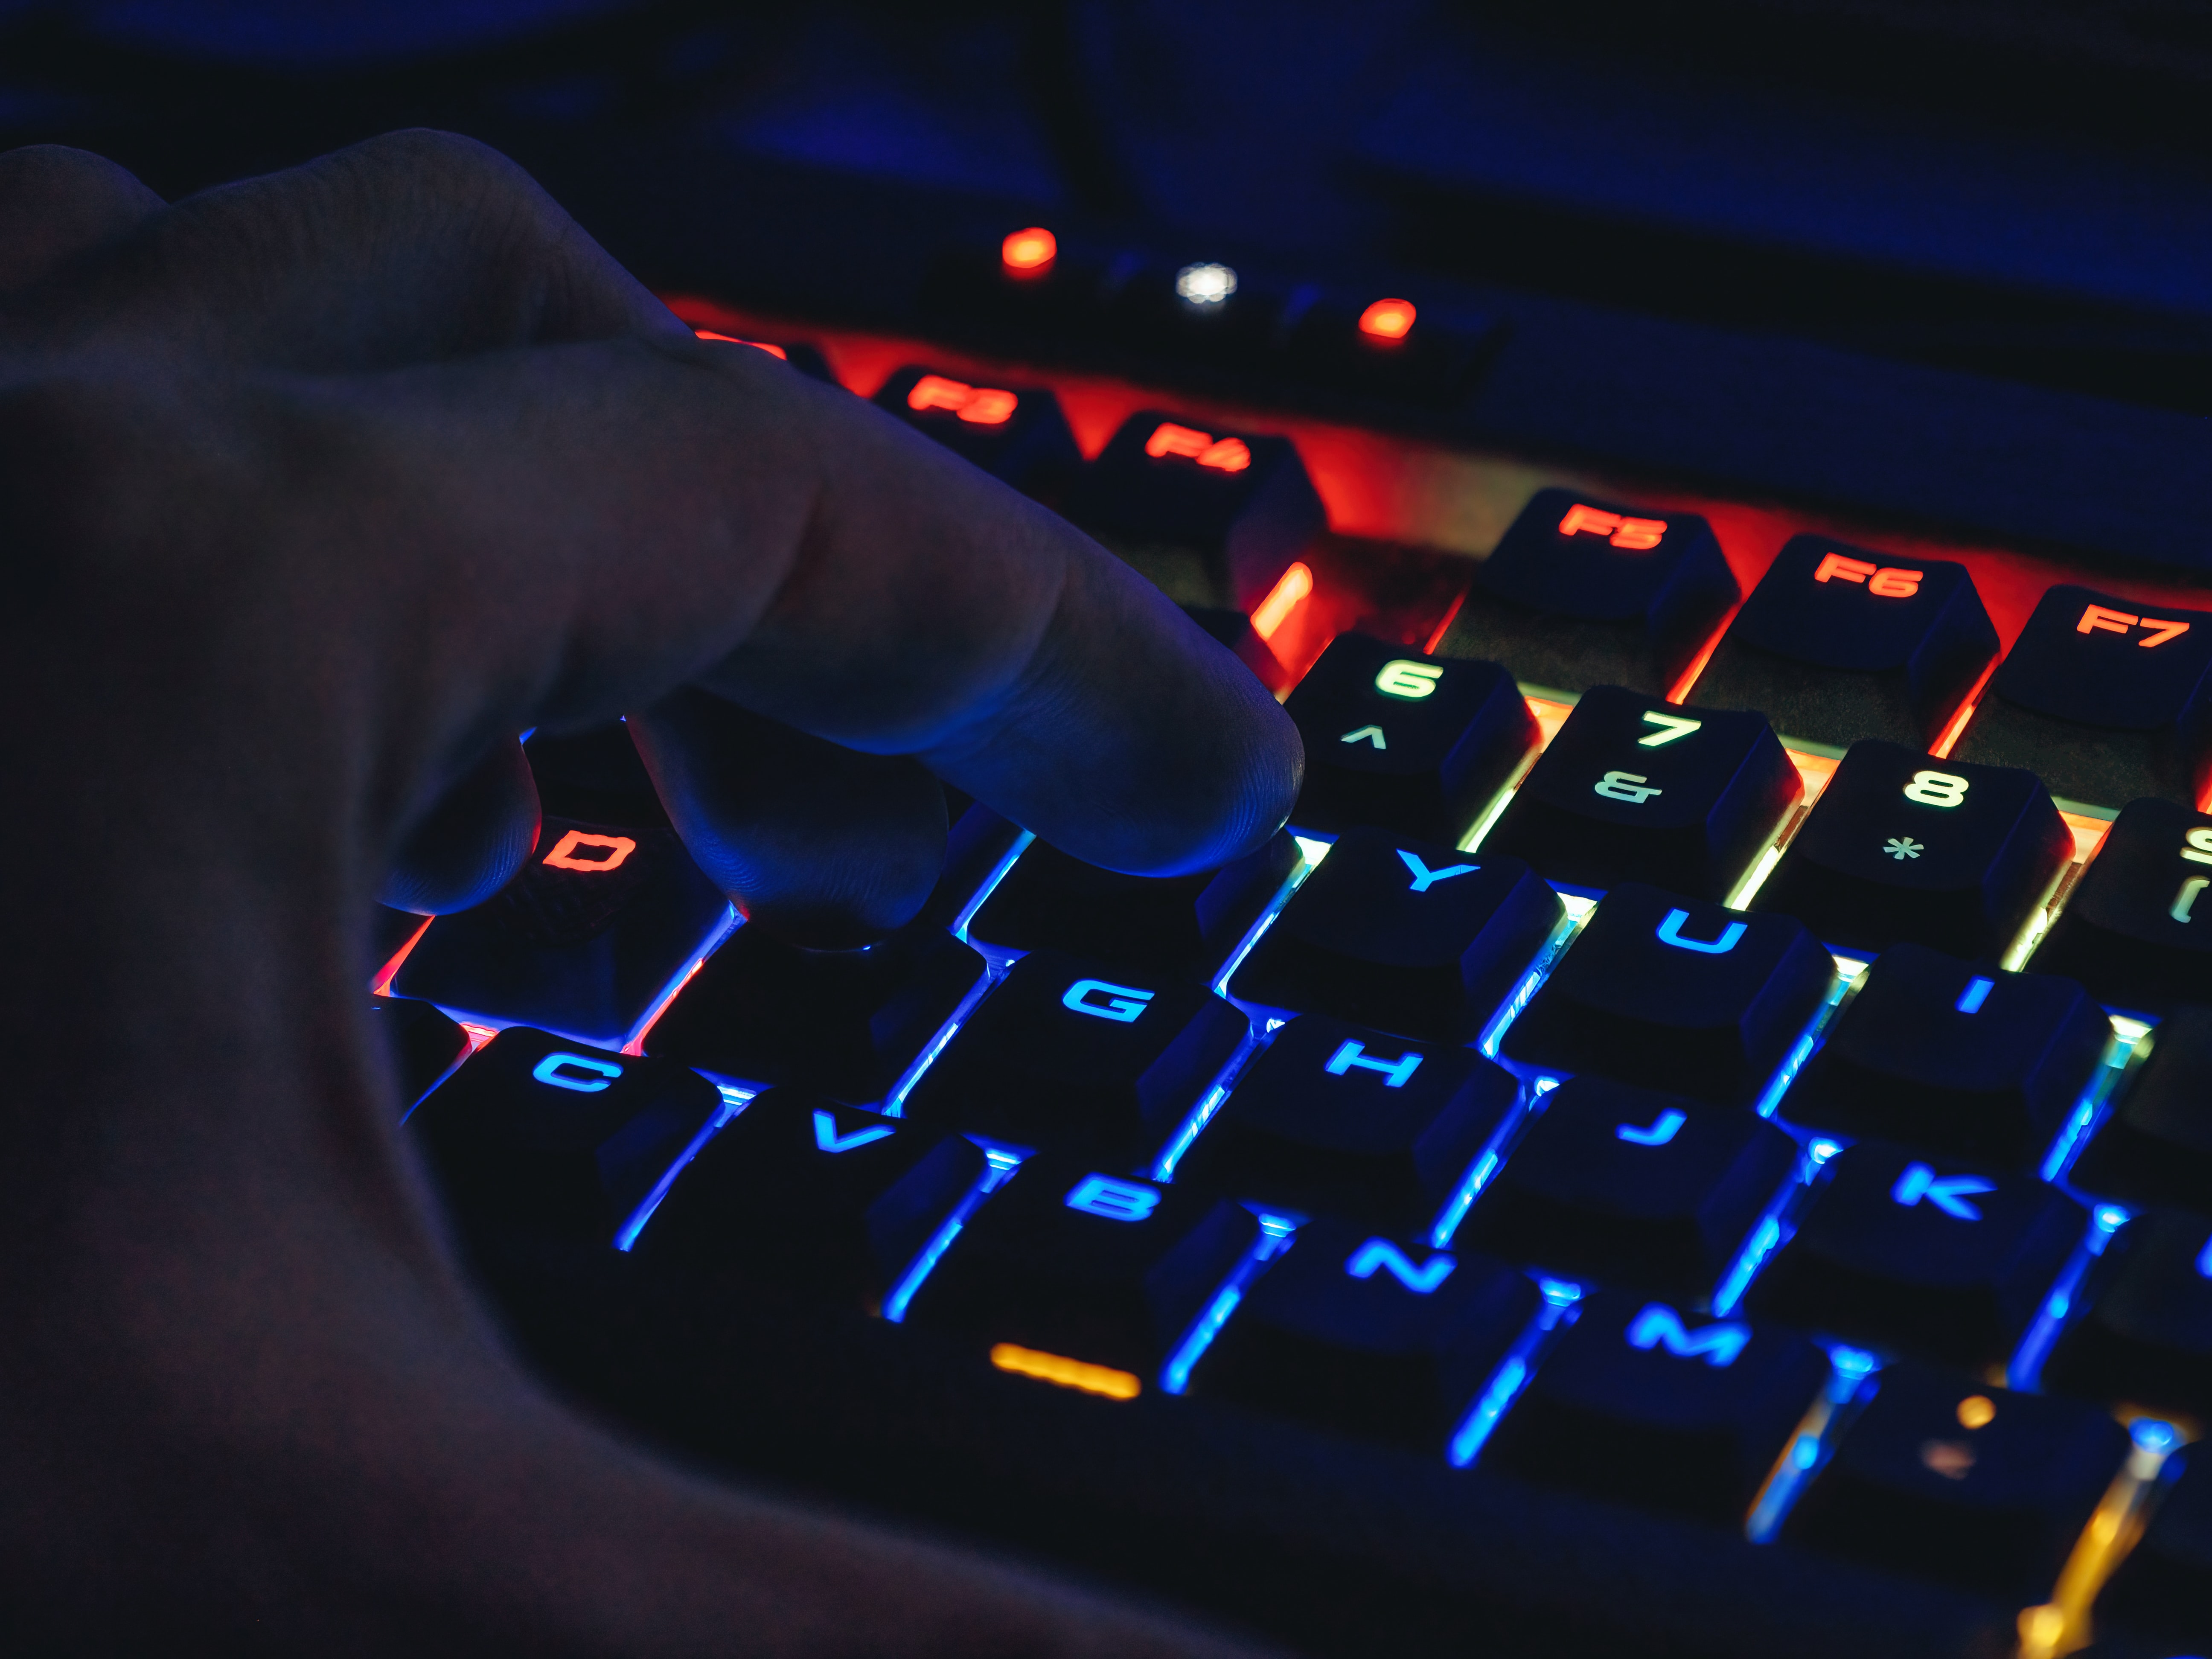 霓虹灯下的键盘闪烁着蓝色、橙色和红色。一个男人的手悬在上面，准备打字。